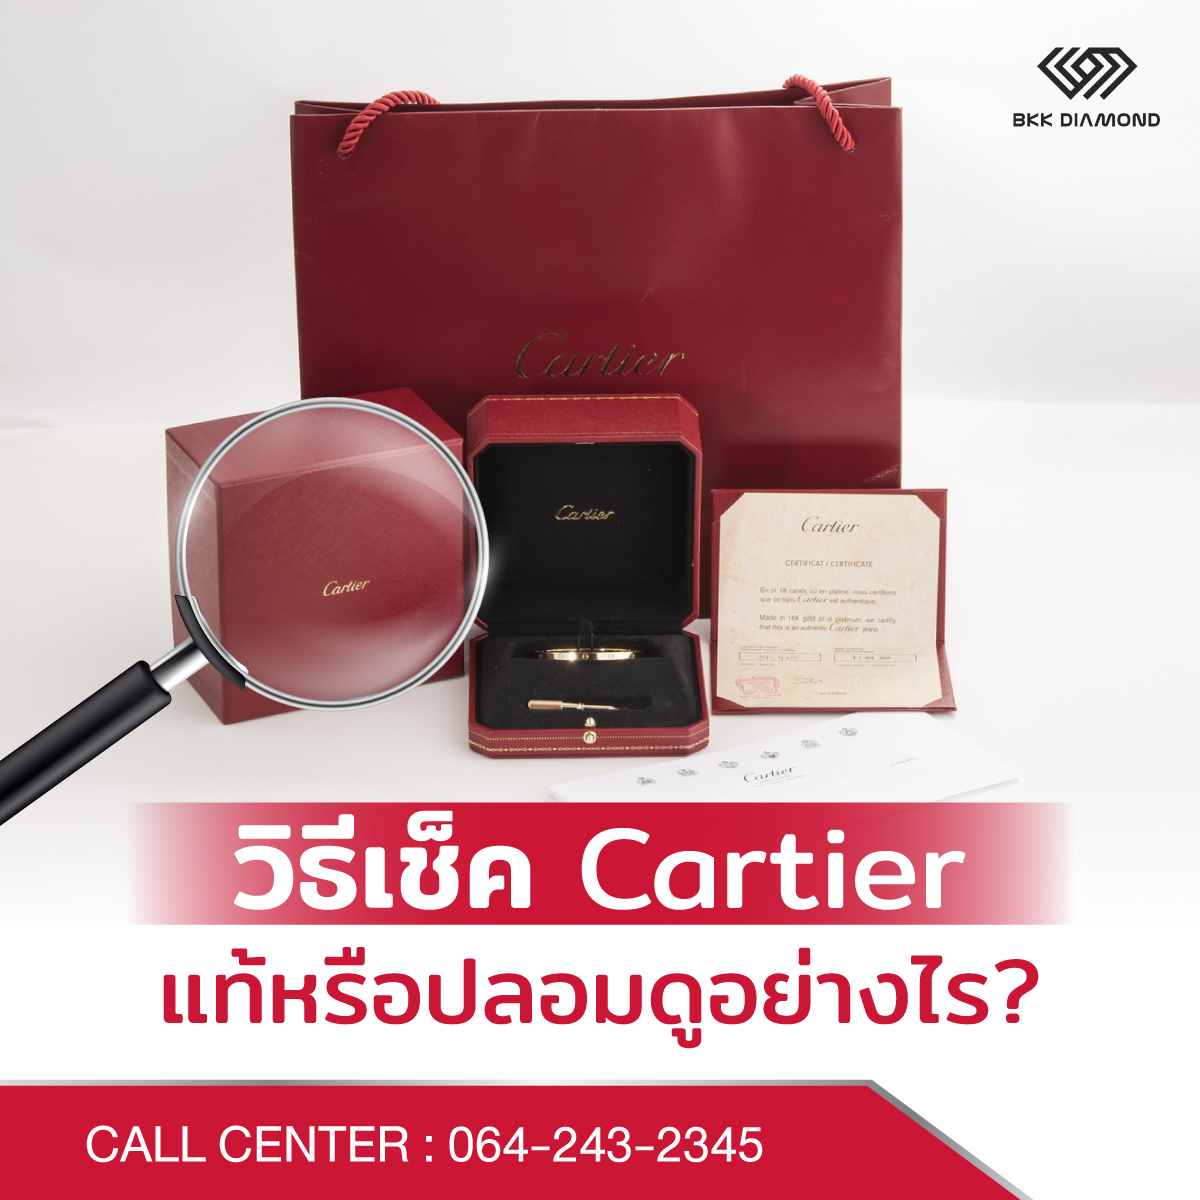 วิธีเช็ค Cartier แท้หรือปลอมดูอย่างไร?